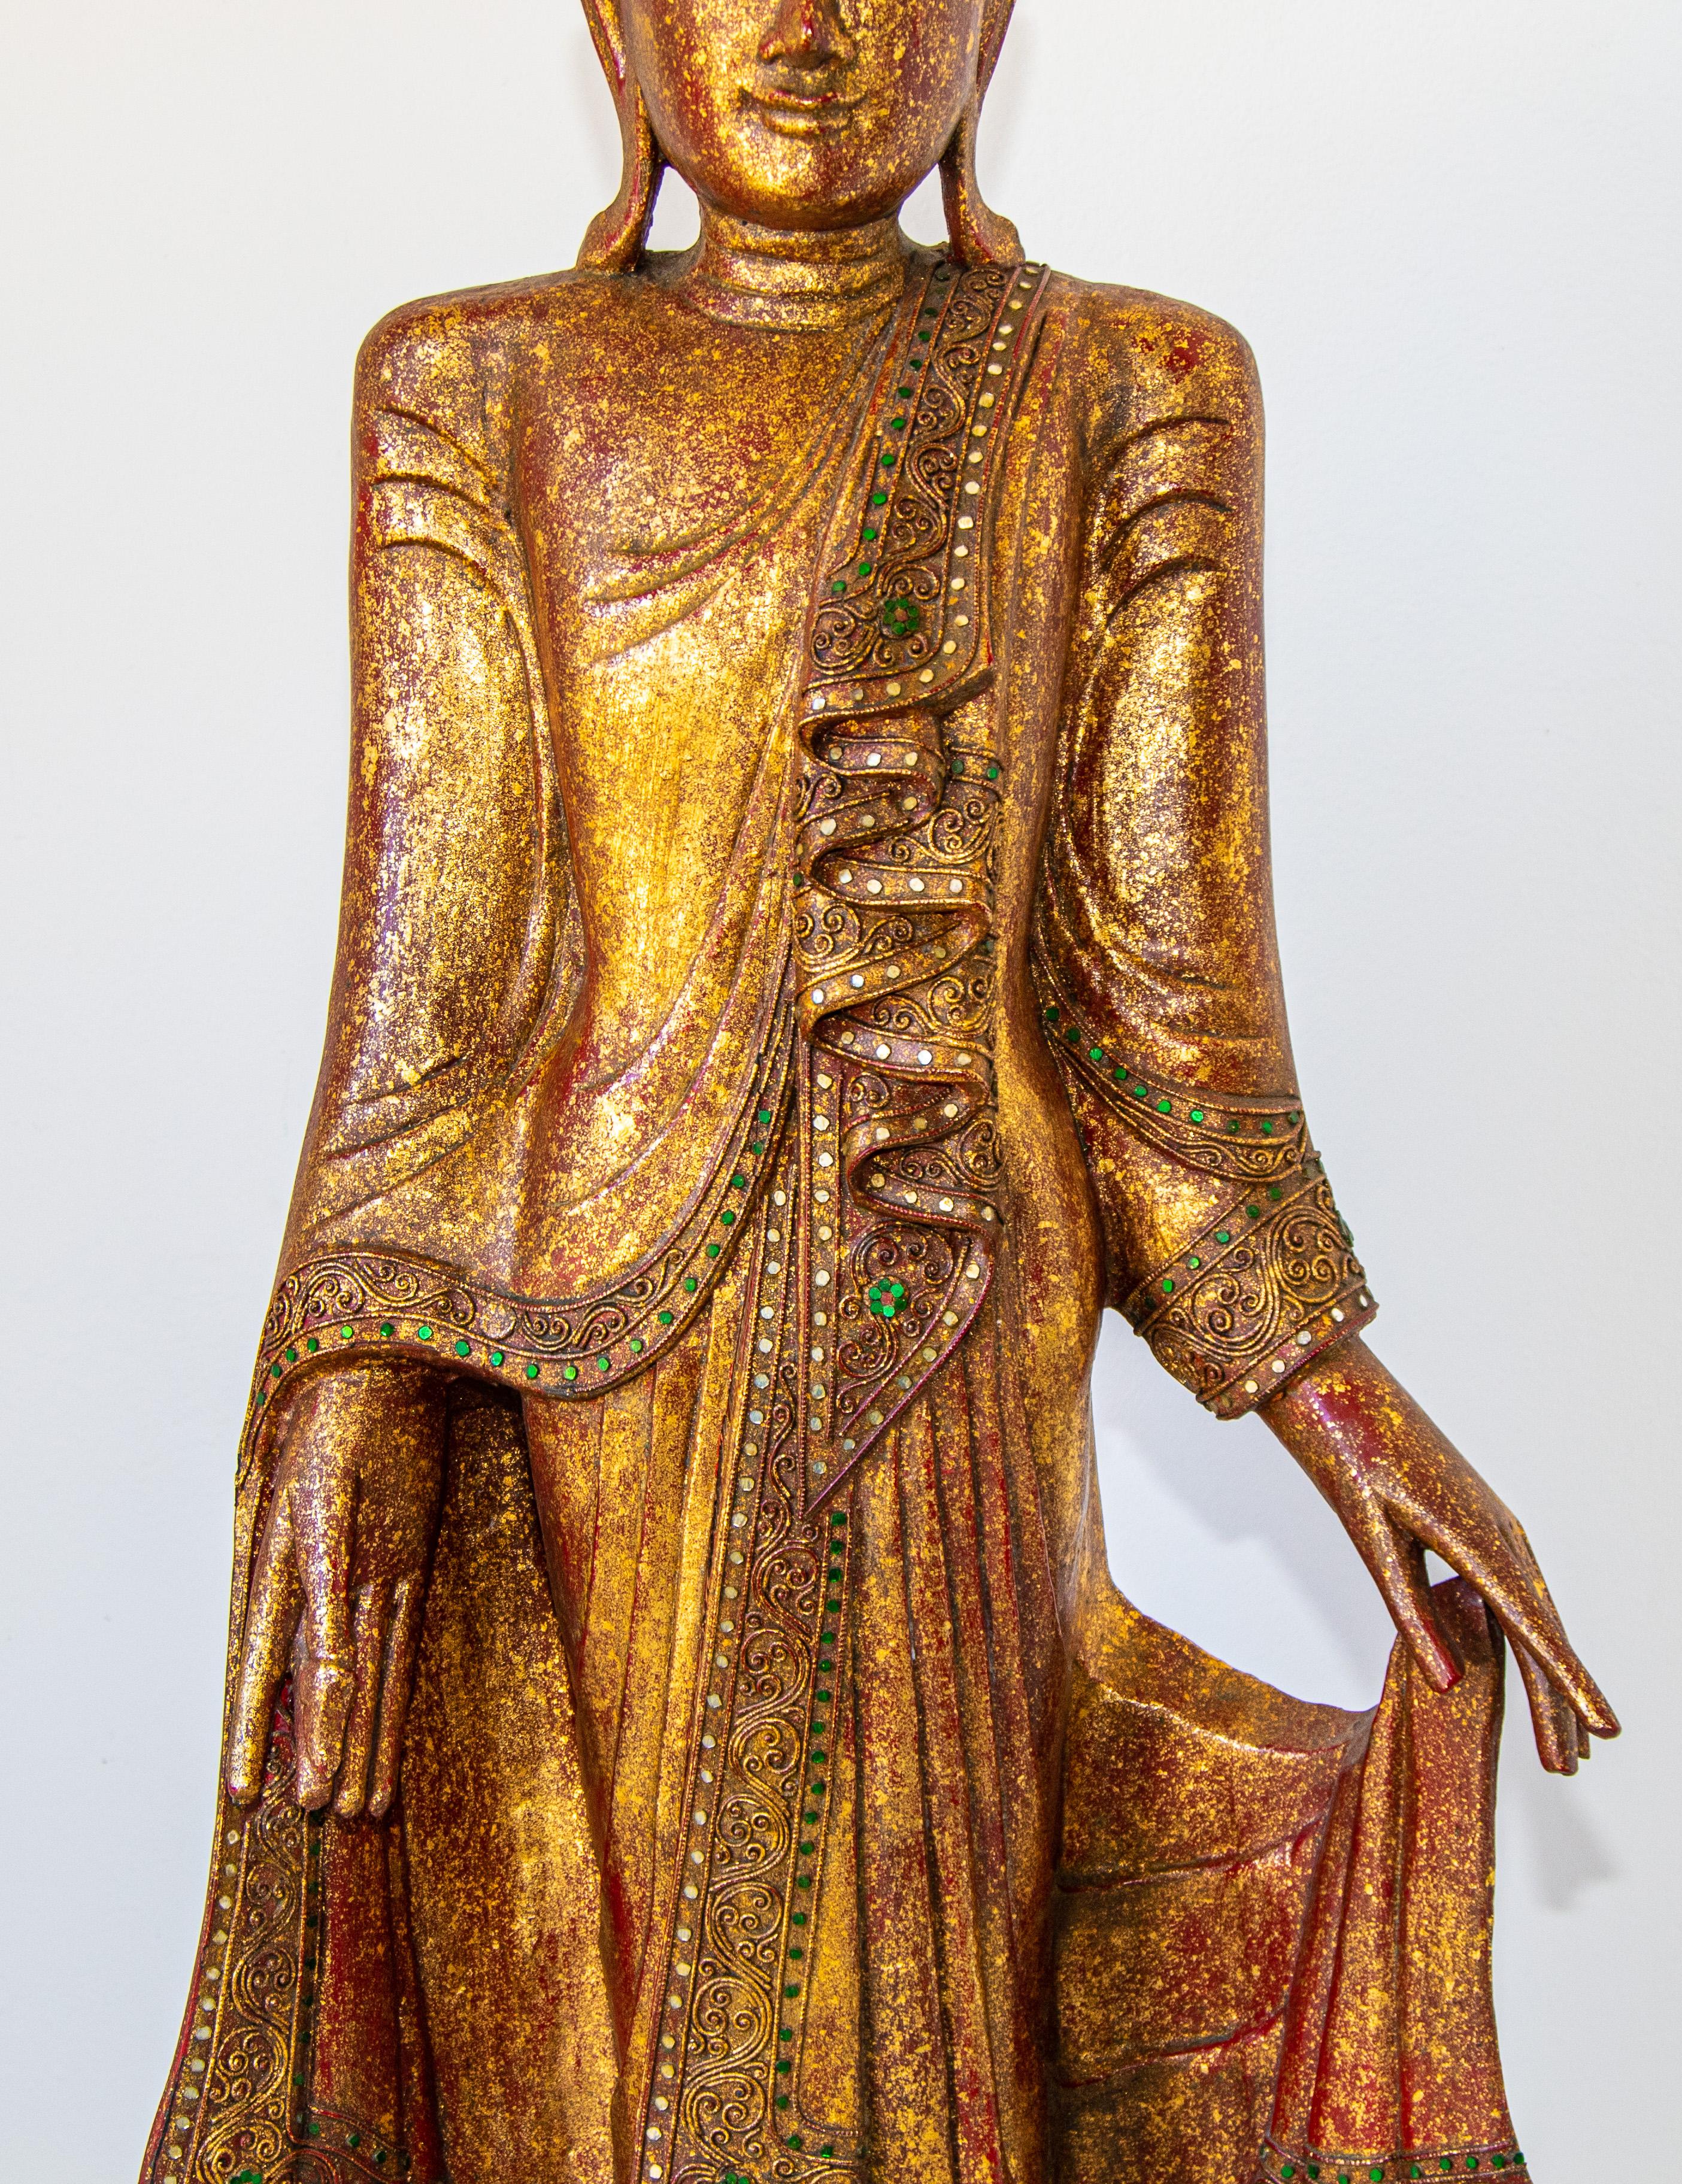 buddha standing statue